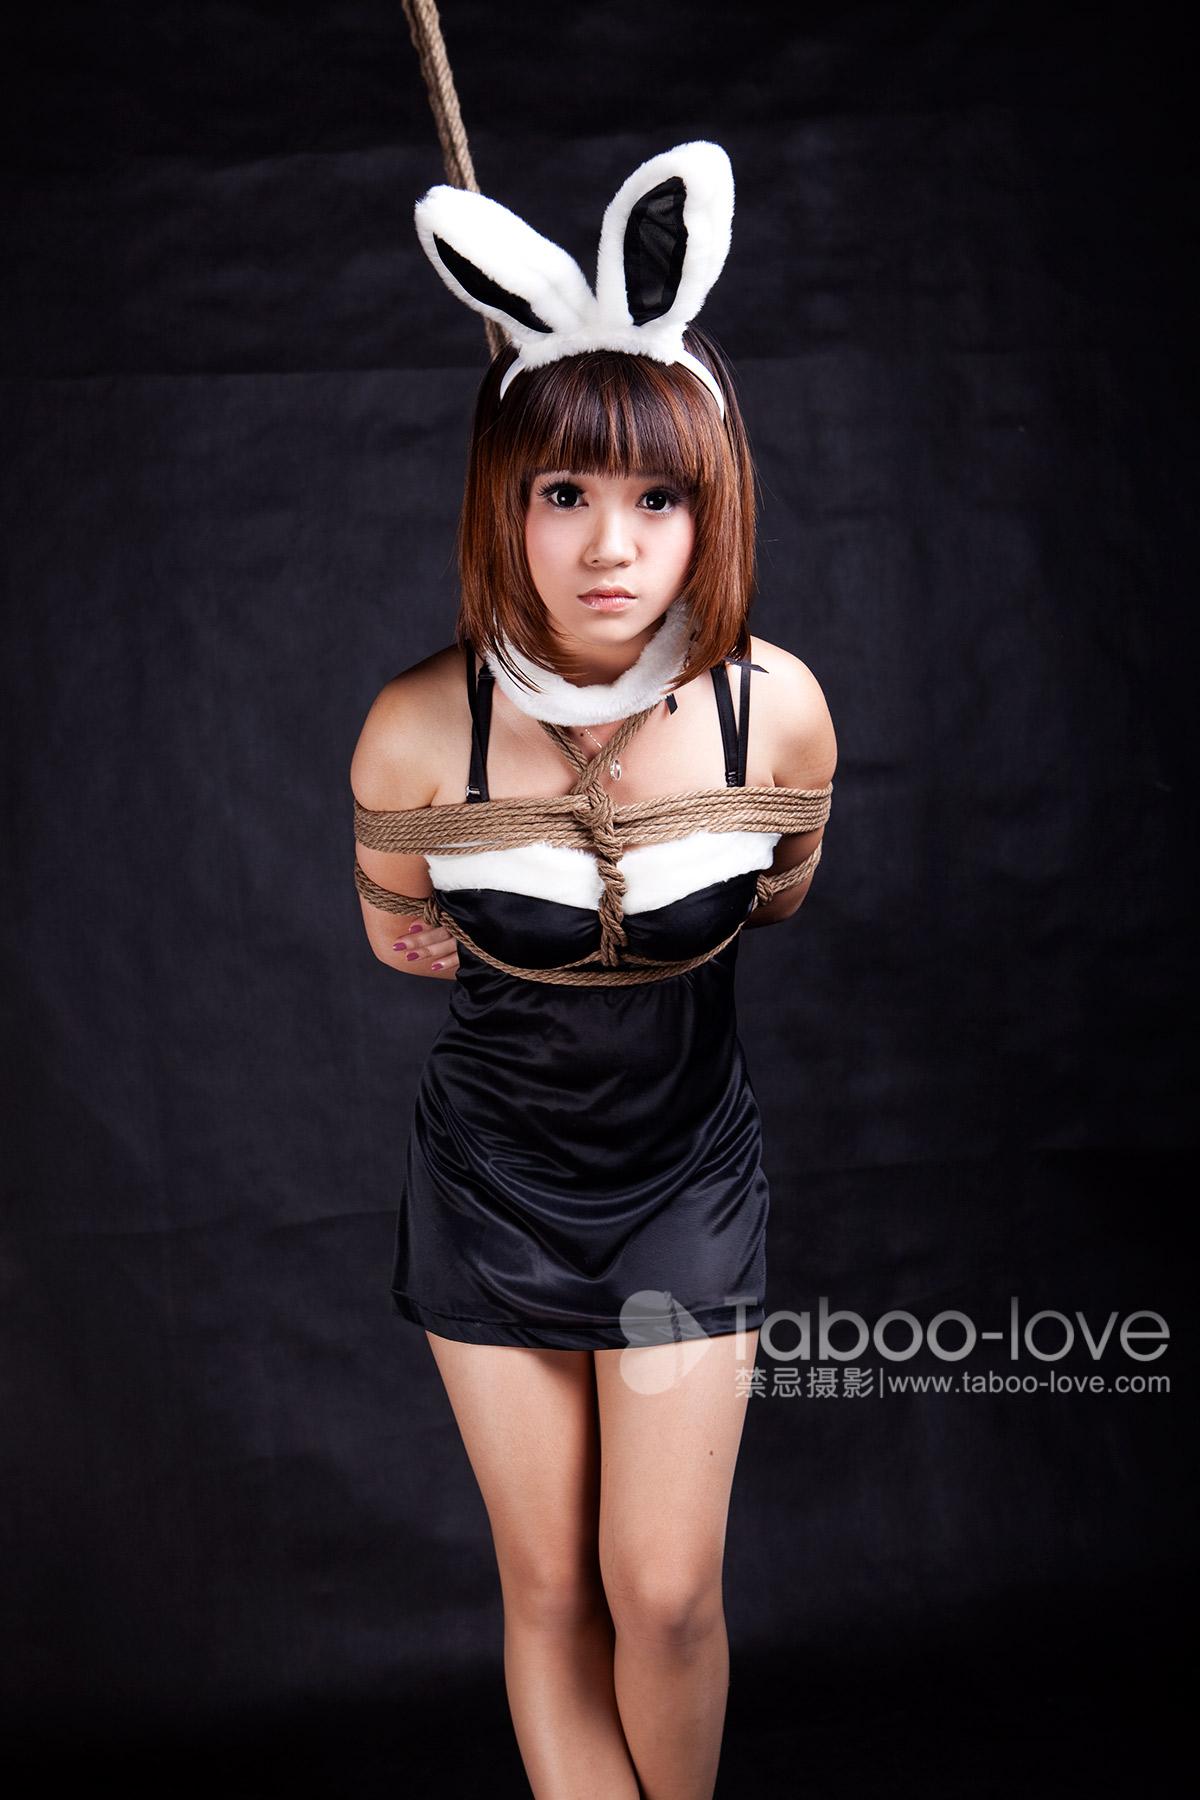 Taboo-love NO.033 可樂 可樂妹妹小兔女郎 禁忌攝影 - 30.jpg